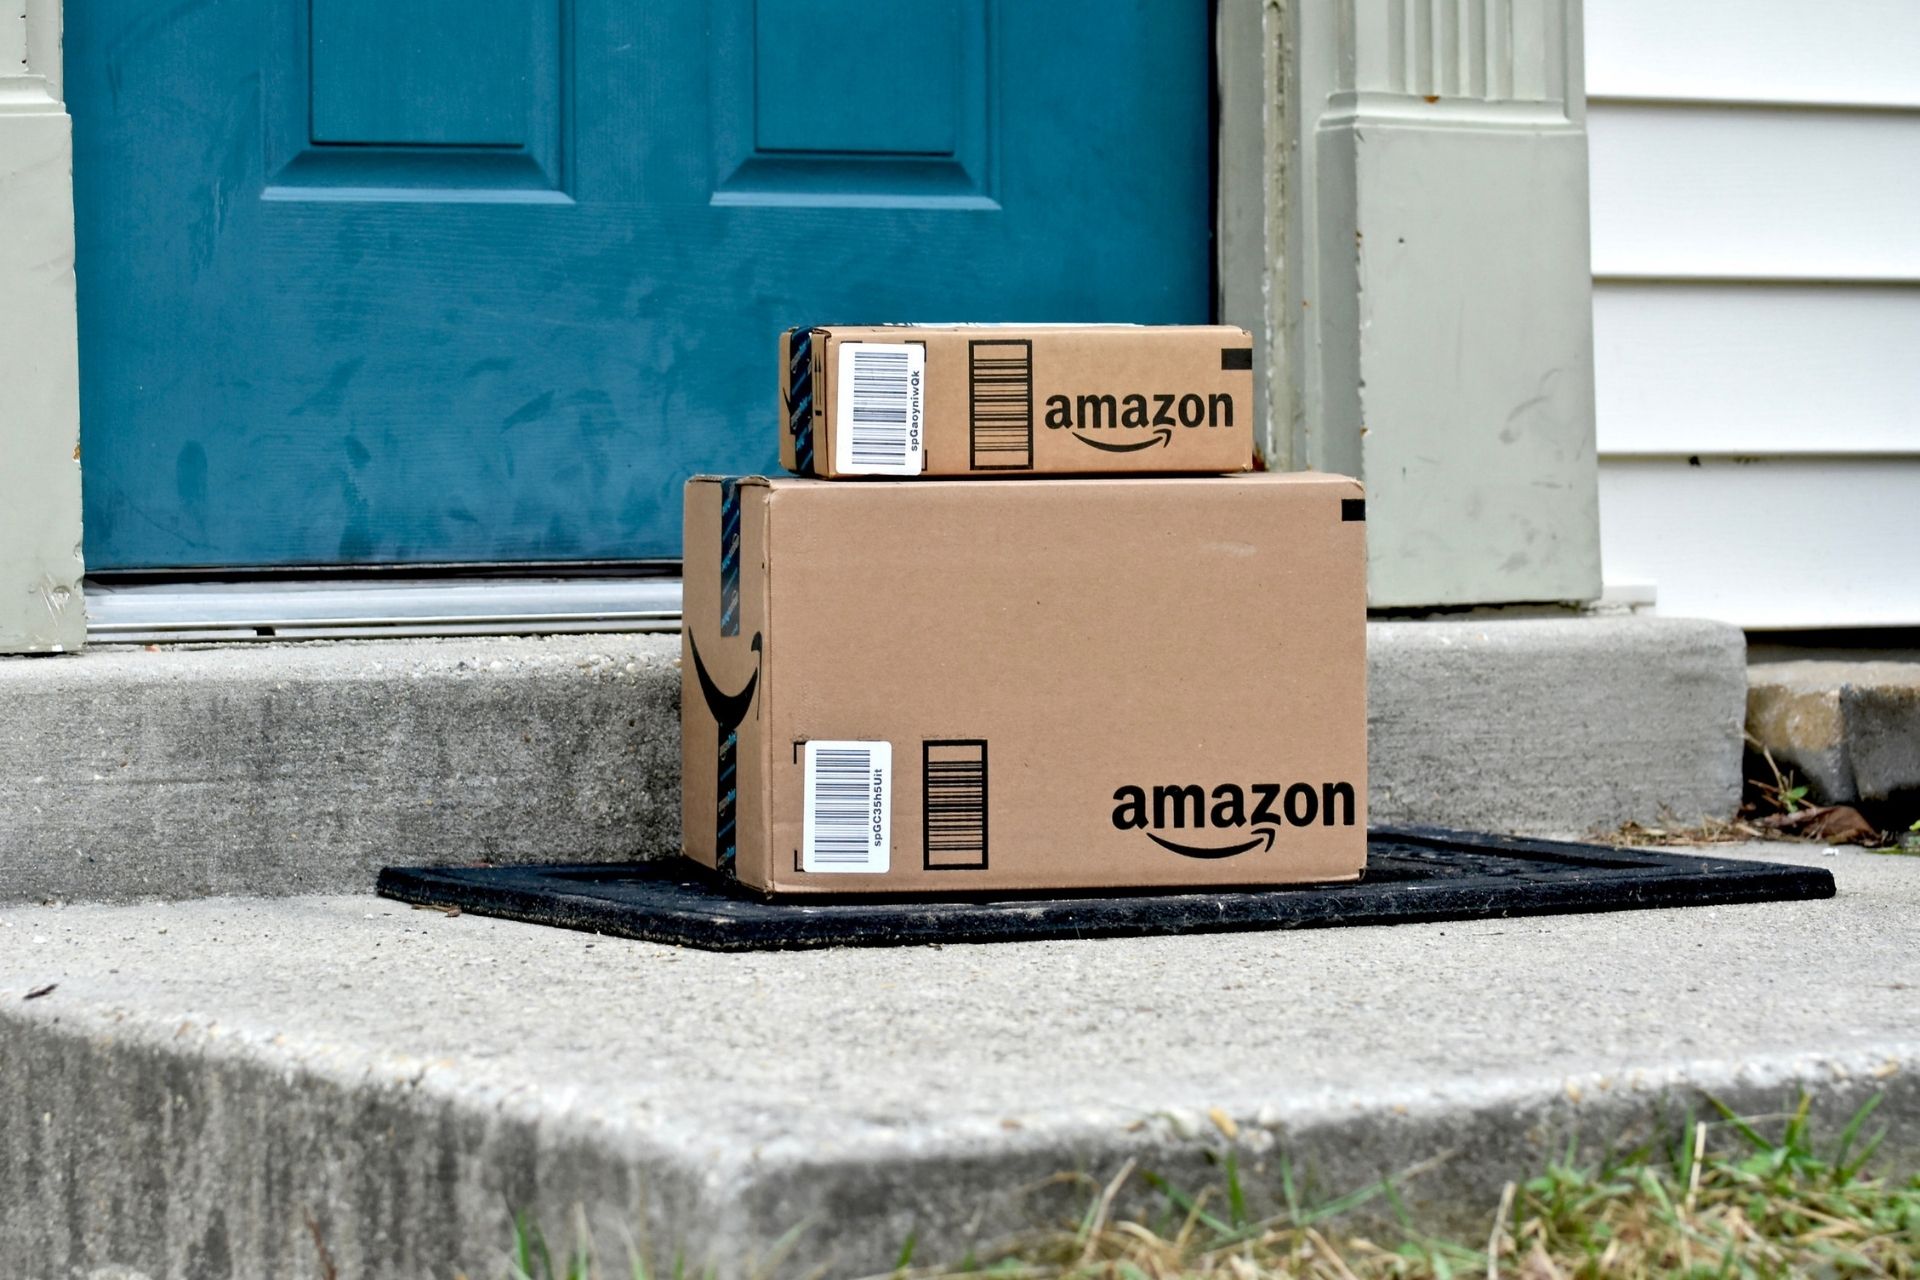 Amazon SEO po rezulton të jetë e një rëndësie të jashtëzakonshme për të pozicionuar më mirë produktet tuaja